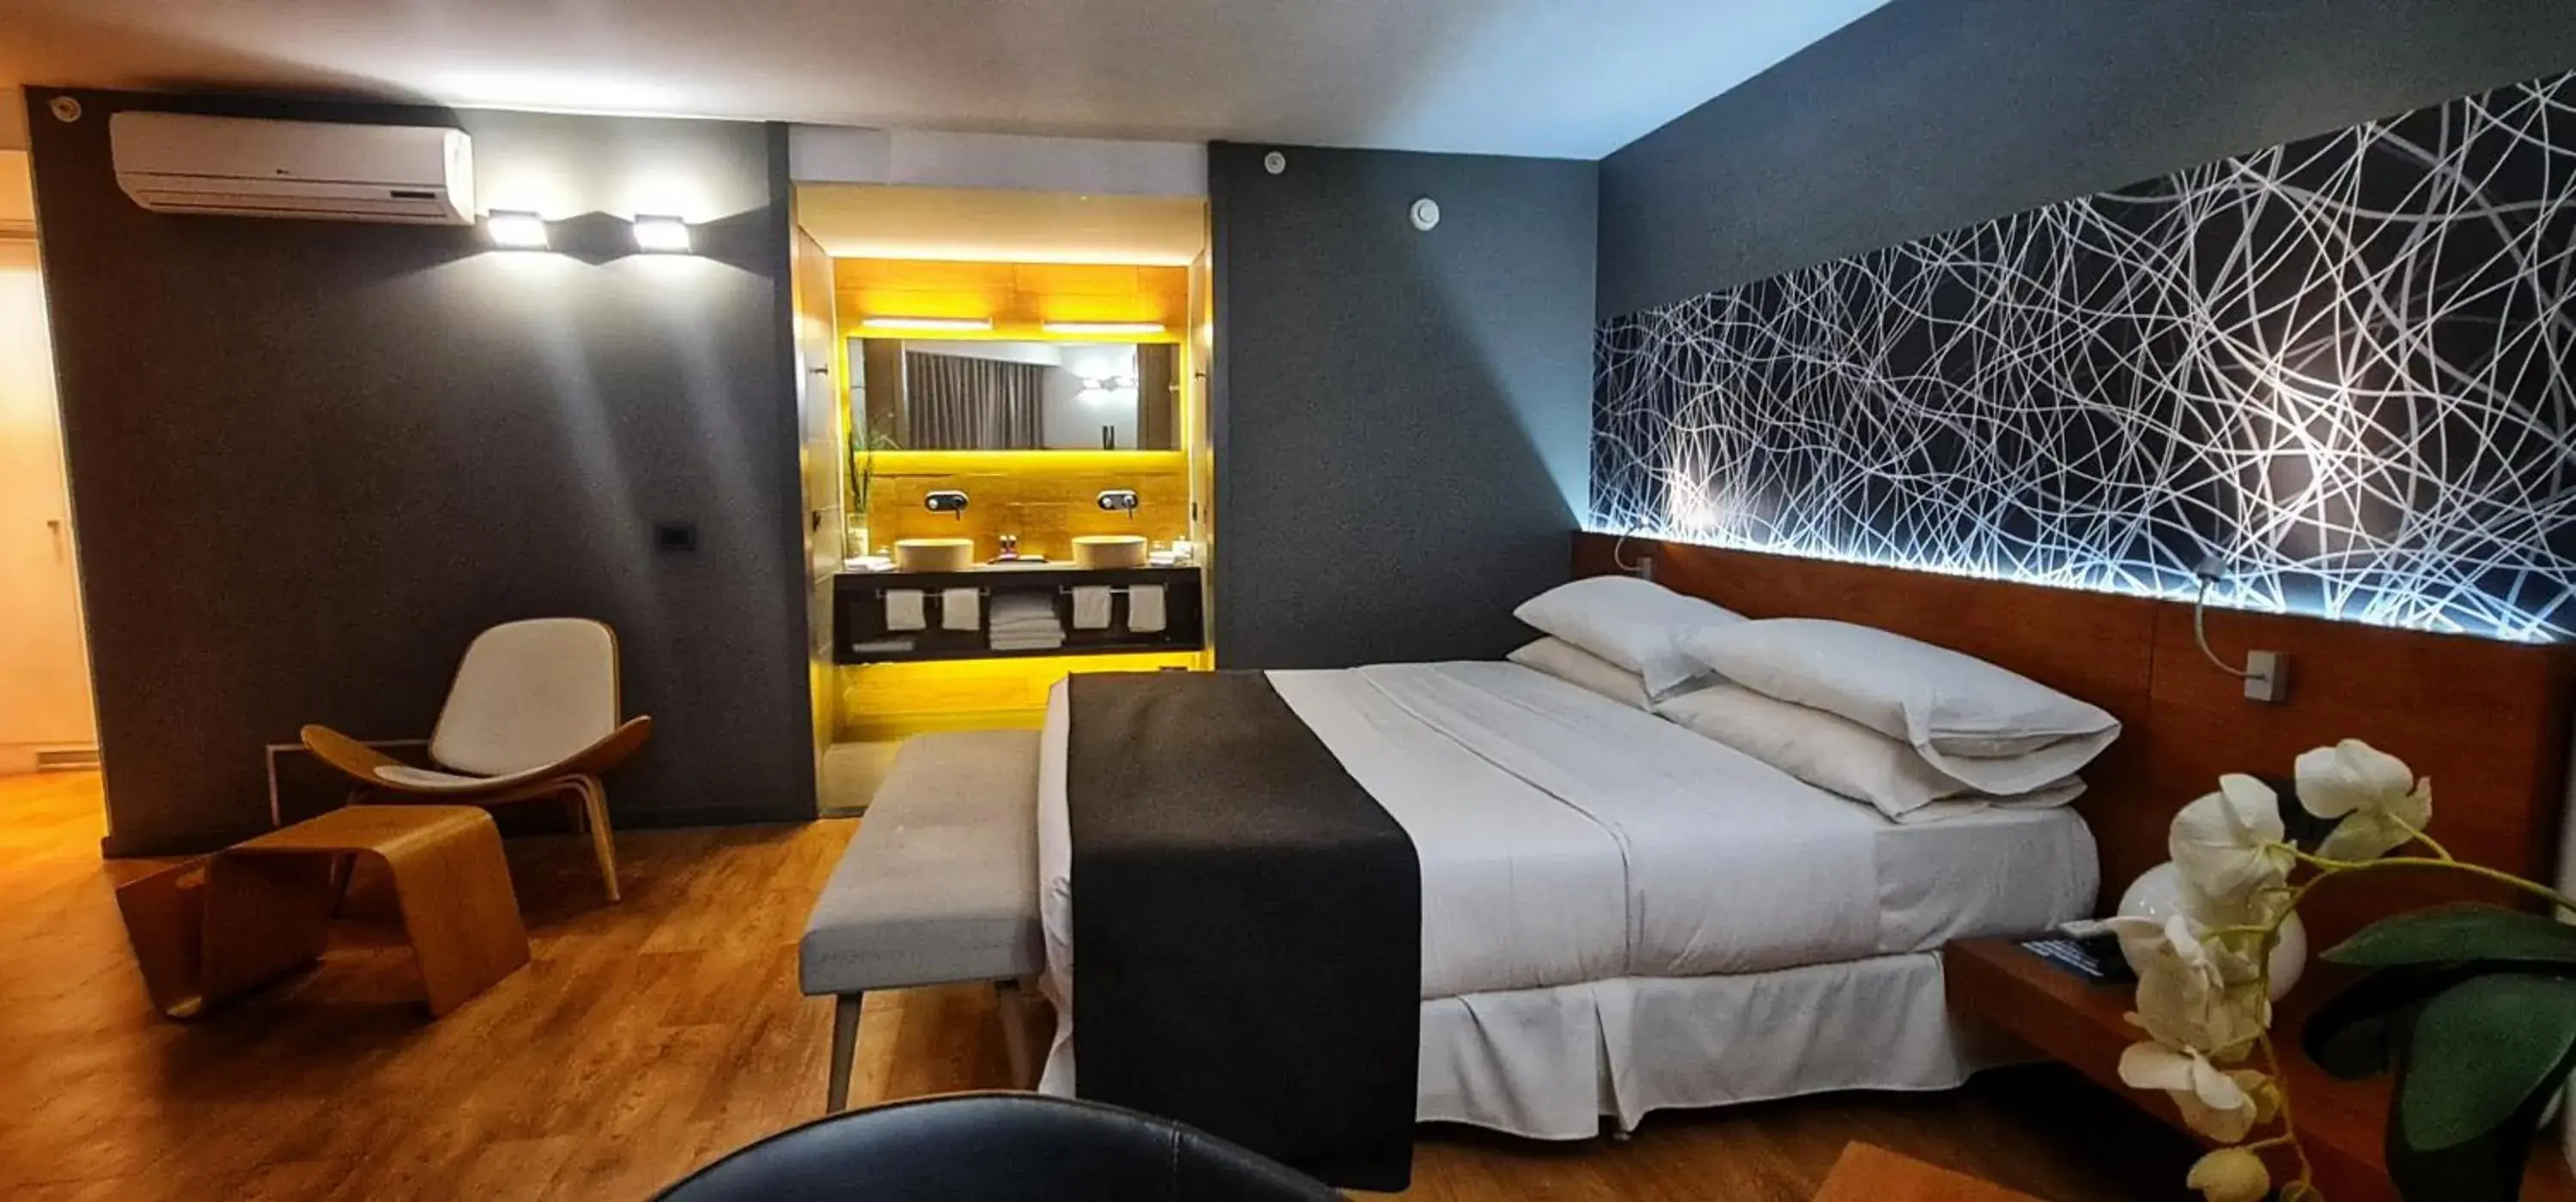 Bedroom in BIT Design Hotel